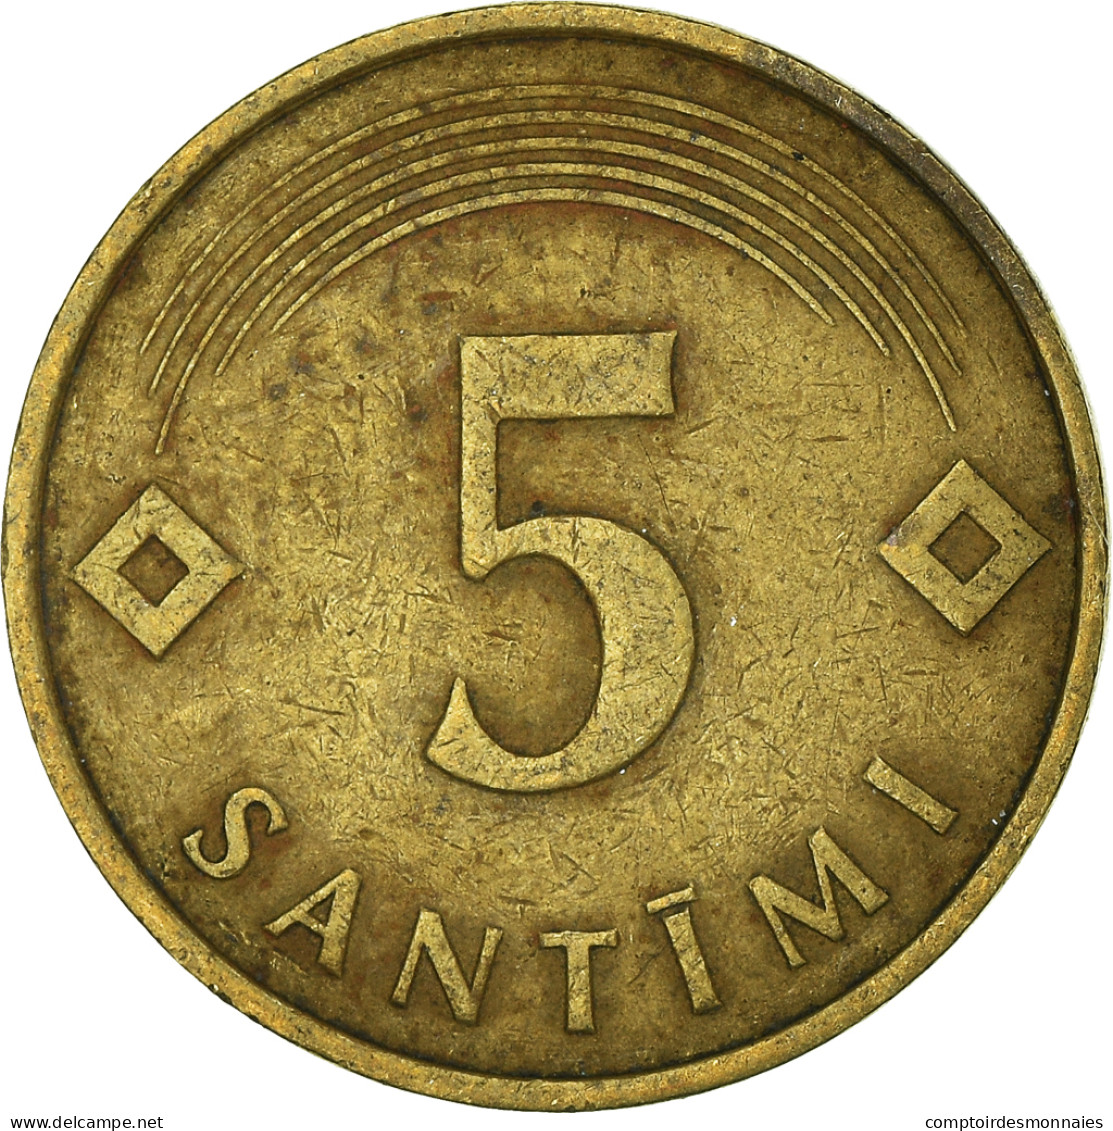 Monnaie, Lettonie, 5 Santimi, 1992 - Lettonie